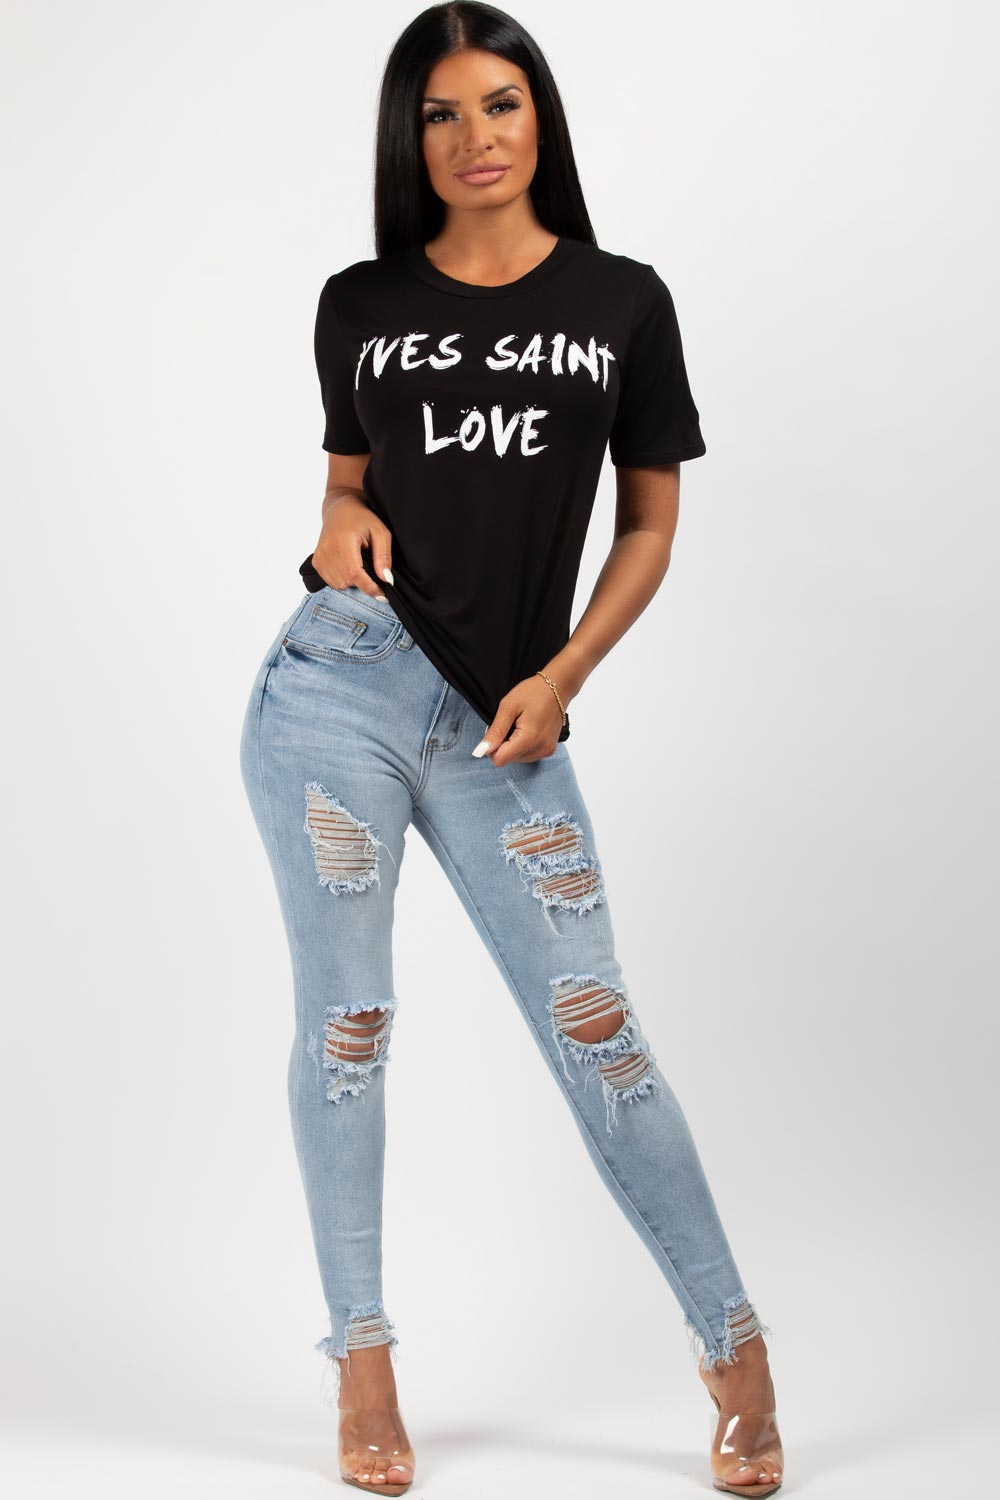 Yves Saint Love Slogan T-Shirt White